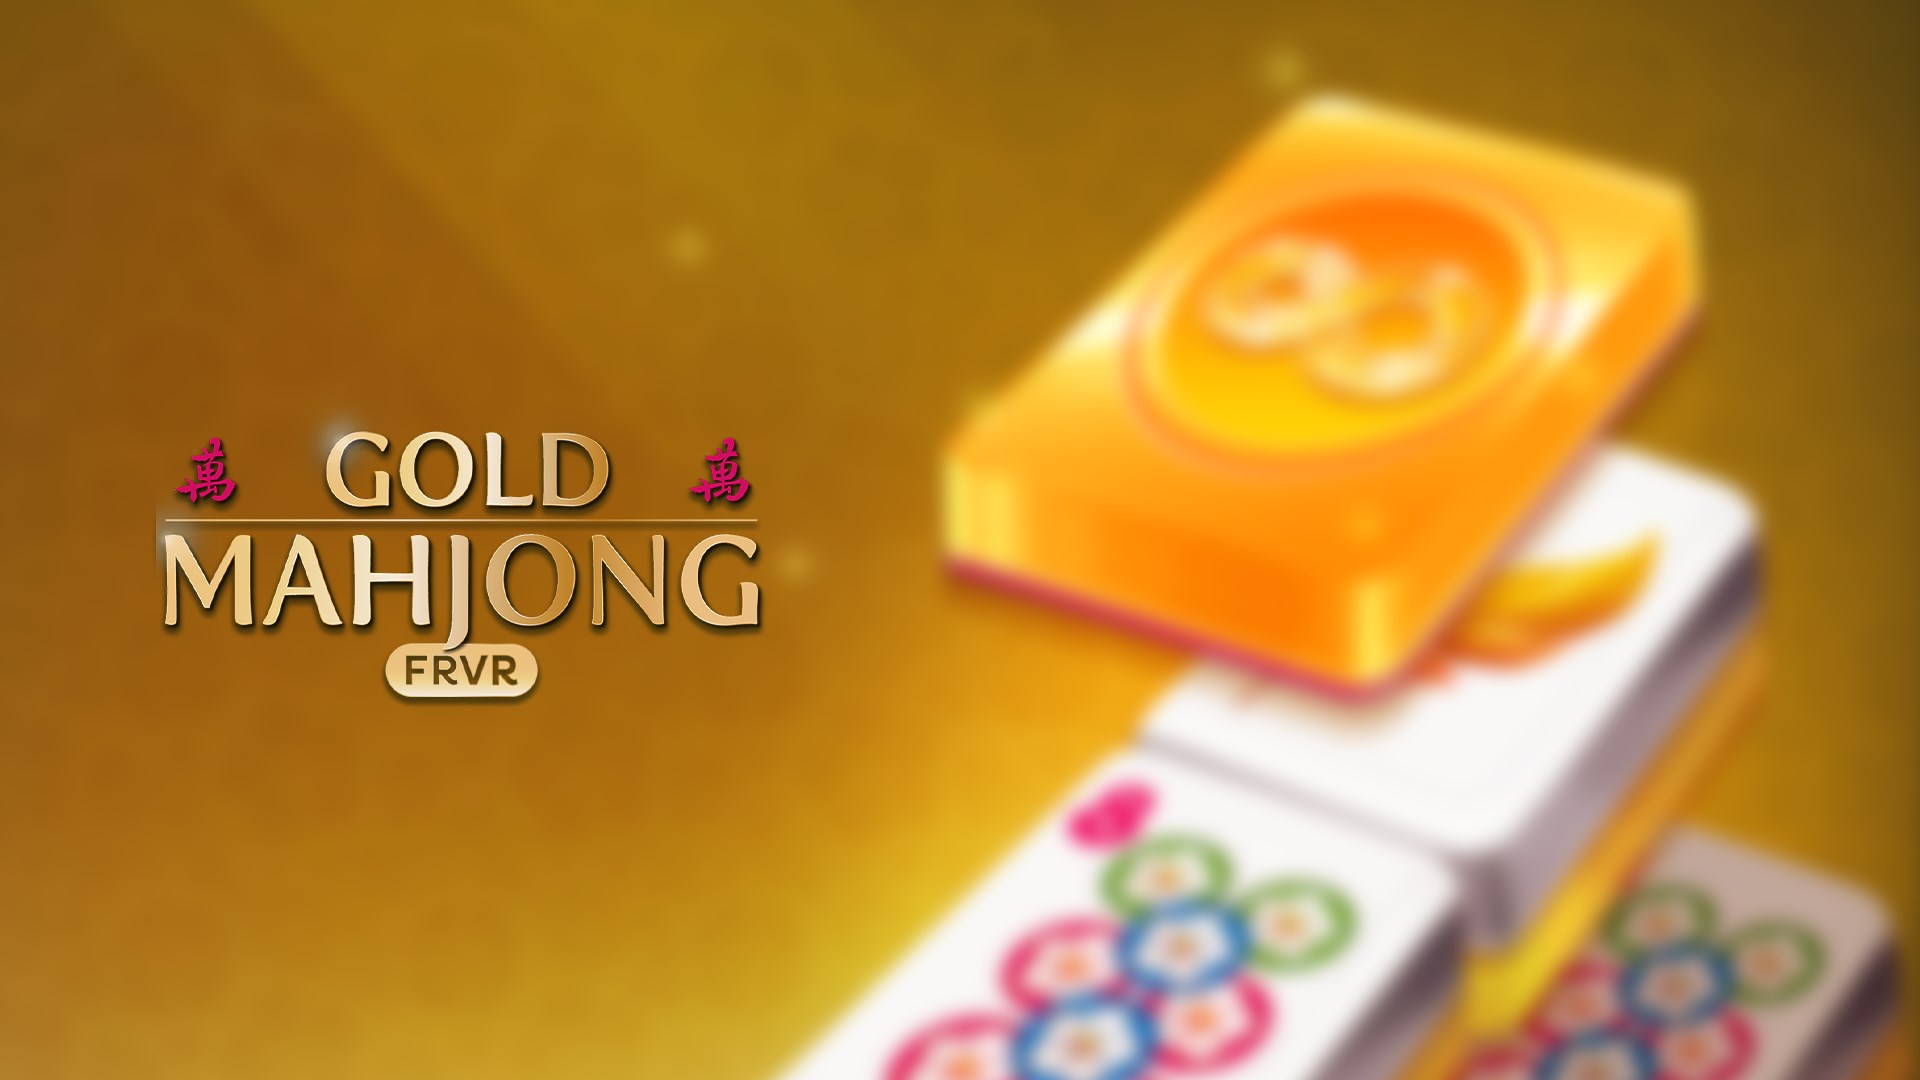 Microsoft Mahjong, Logopedia